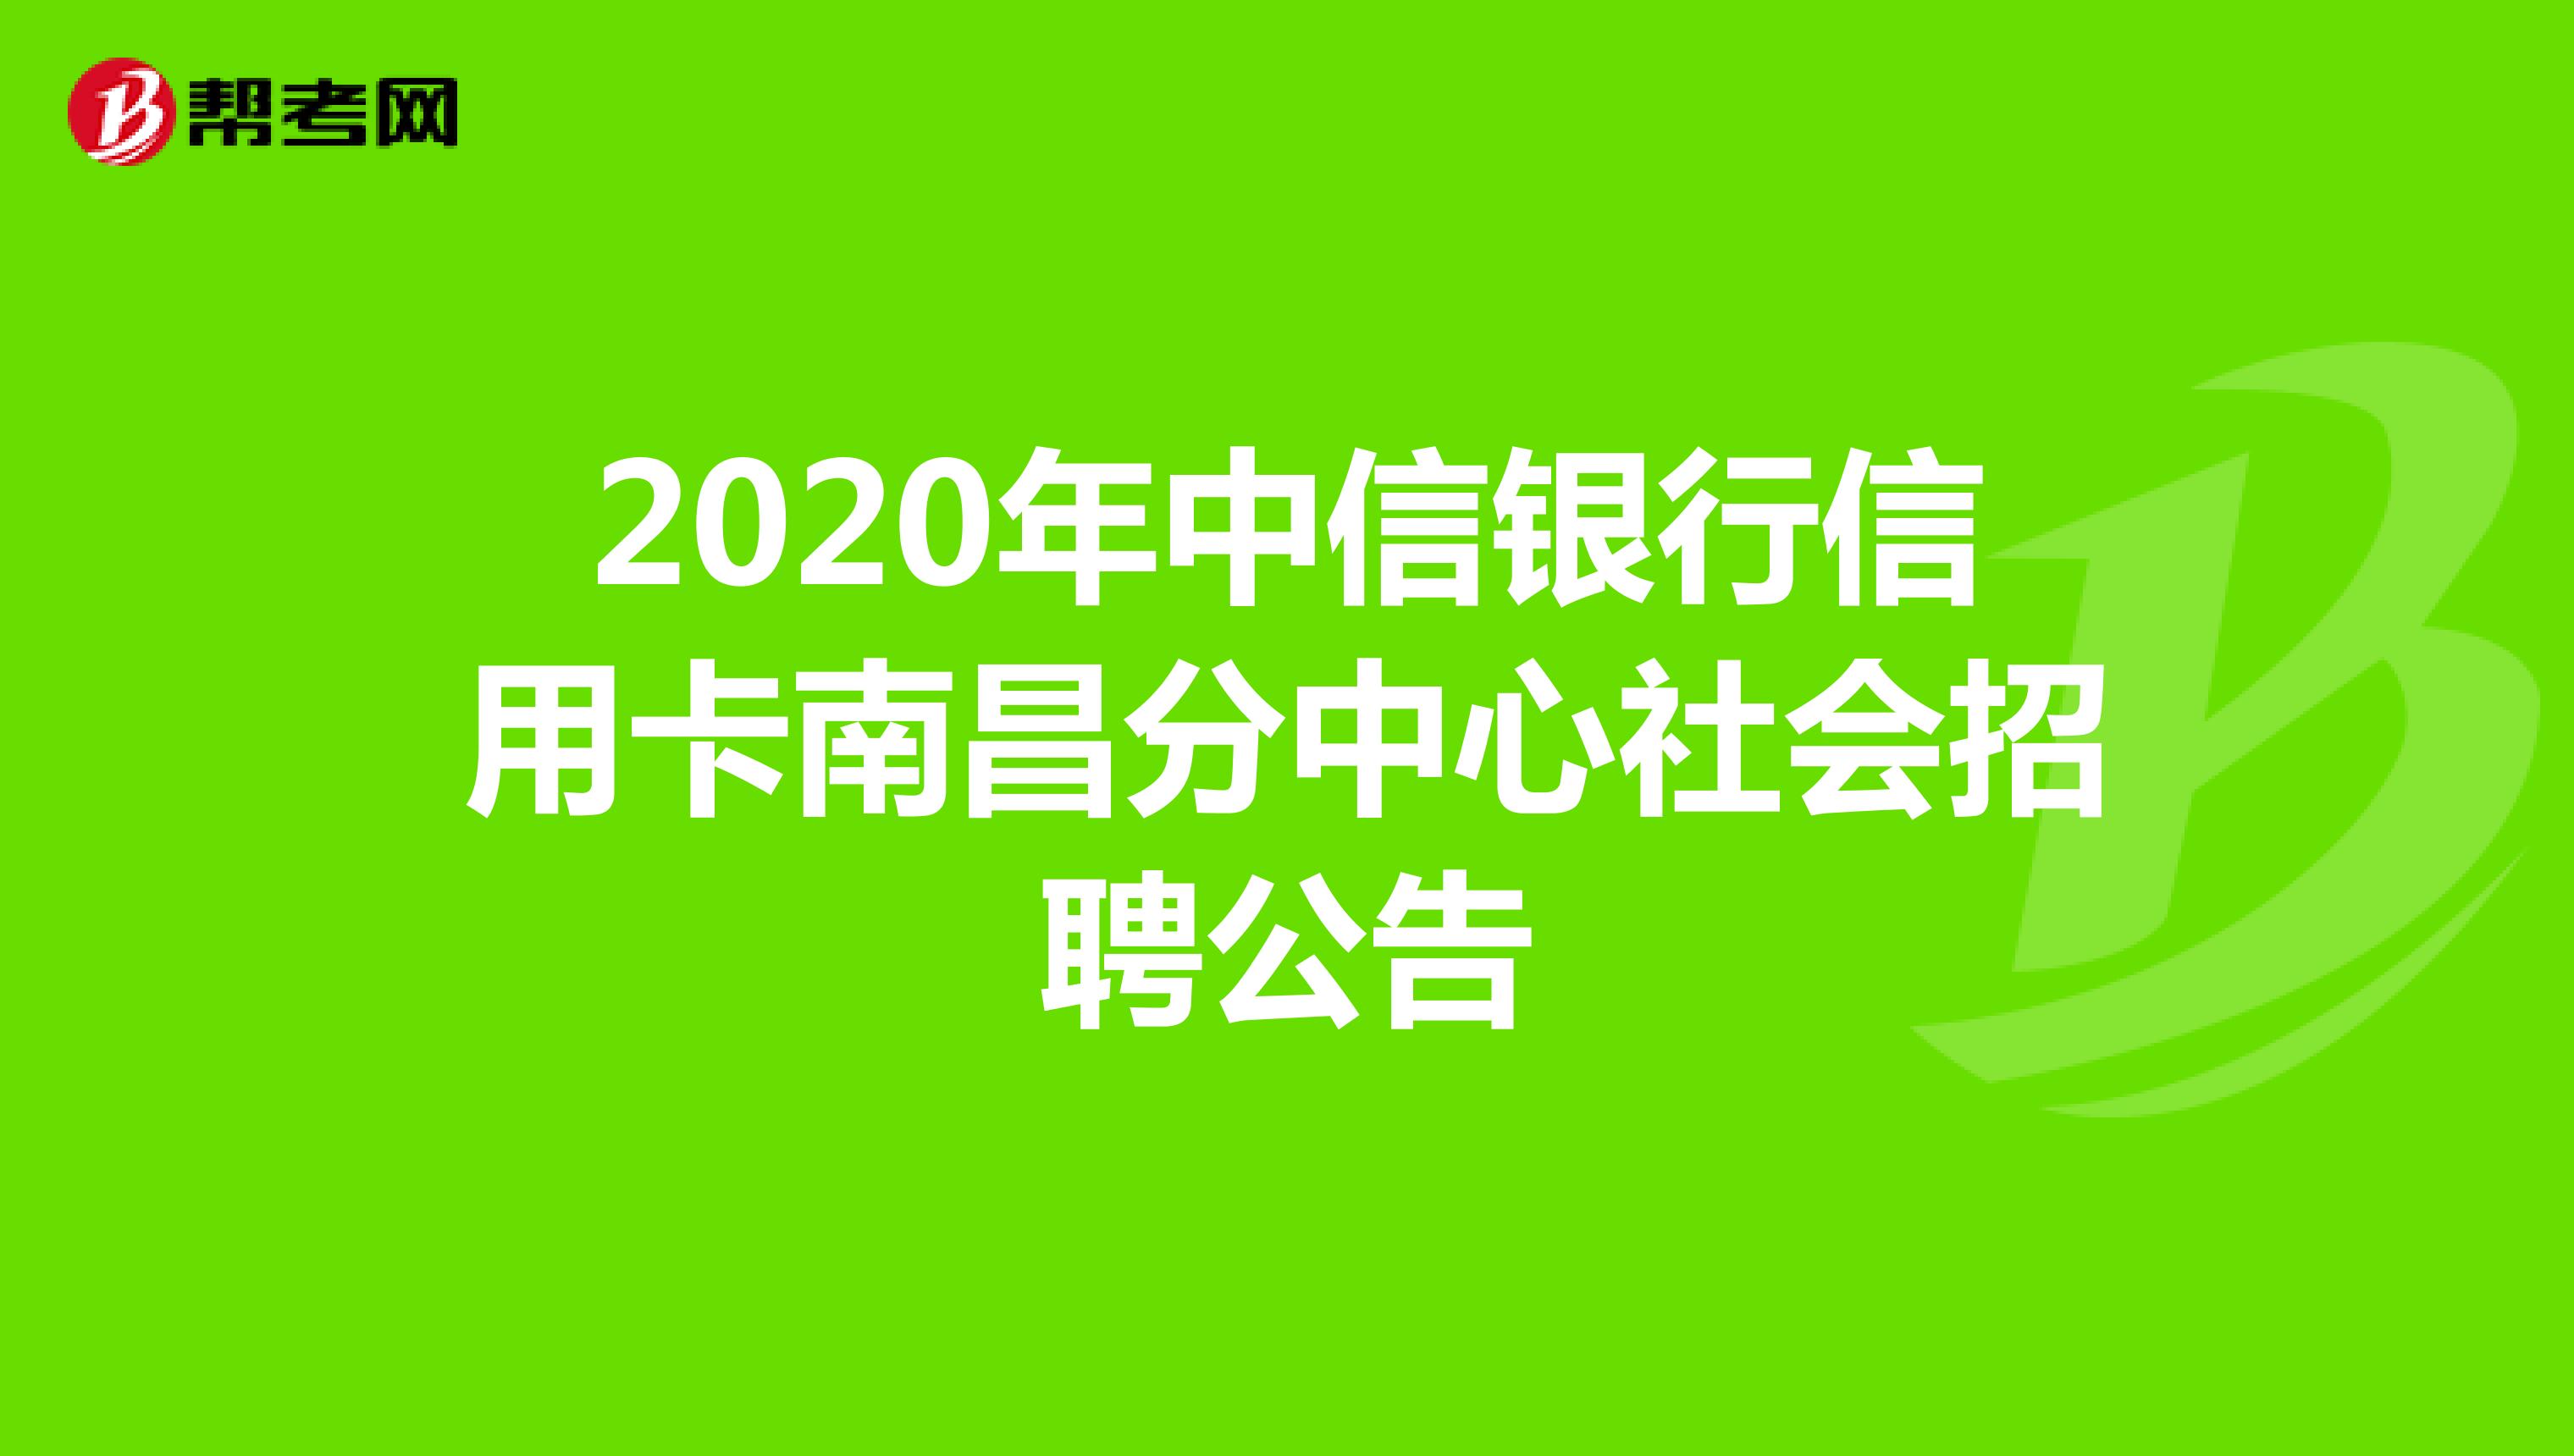 2020年中信银行信用卡南昌分中心社会招聘公告